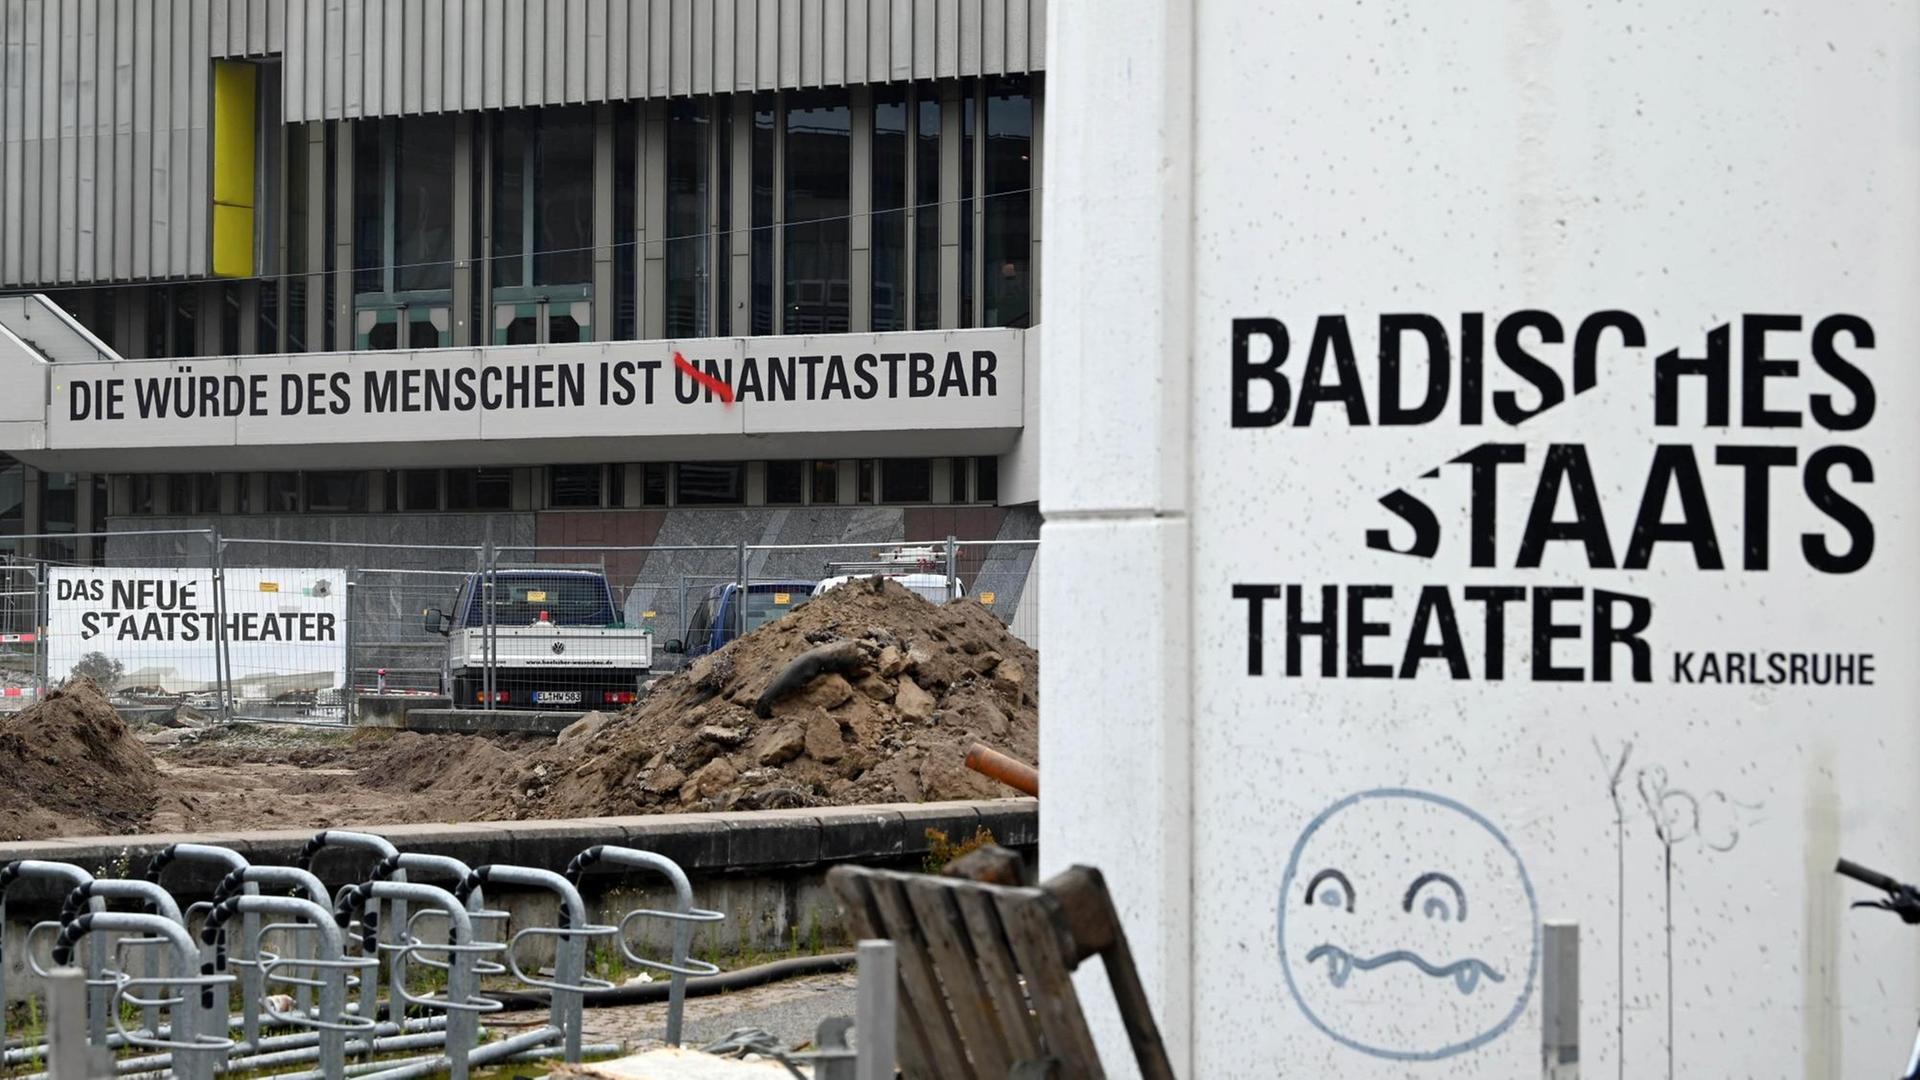 Am Badischen Staatstheater ist der Schriftzug "Die Würde des Menschen ist unantastbar" angebracht. Die Buchstaben UN wurden mit roter Farbe durchgestrichen.